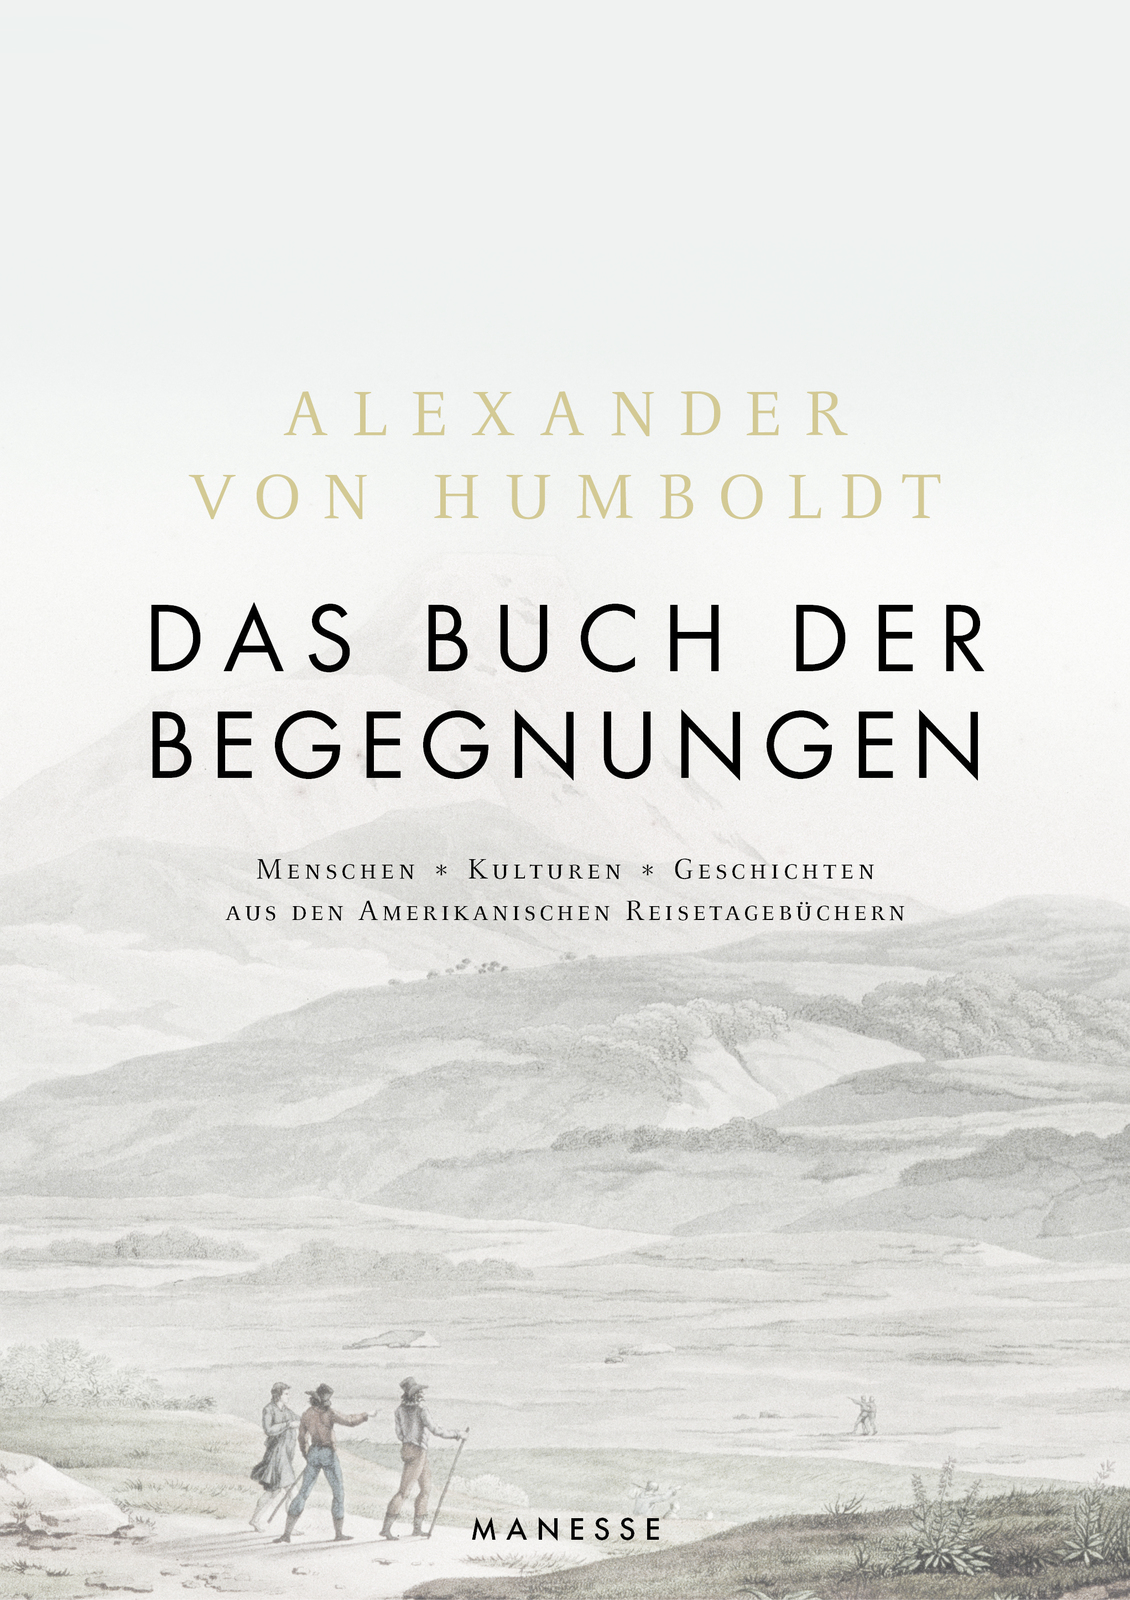 Alexander von Humboldt, Humboldt, Das Buch der Begegnungen, Manesse